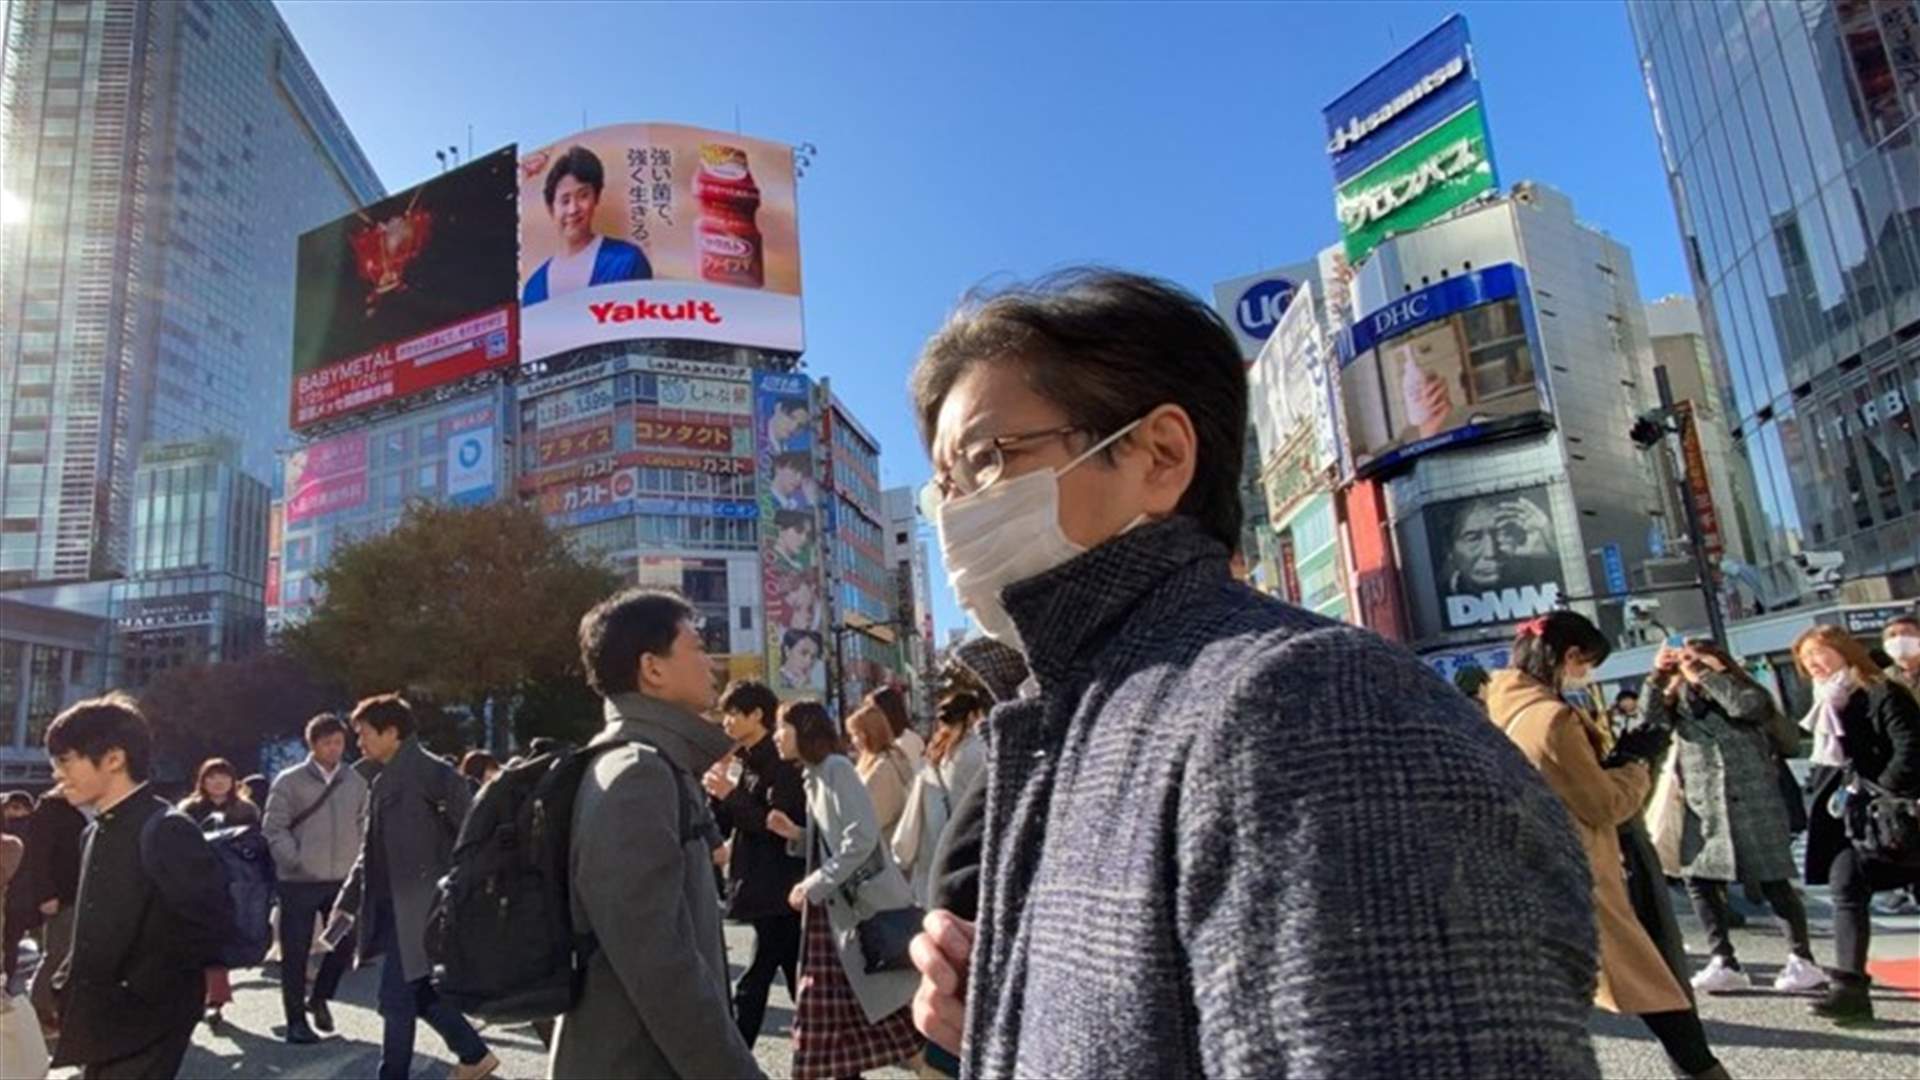 طوكيو تسجل 68 إصابة جديدة بكورونا